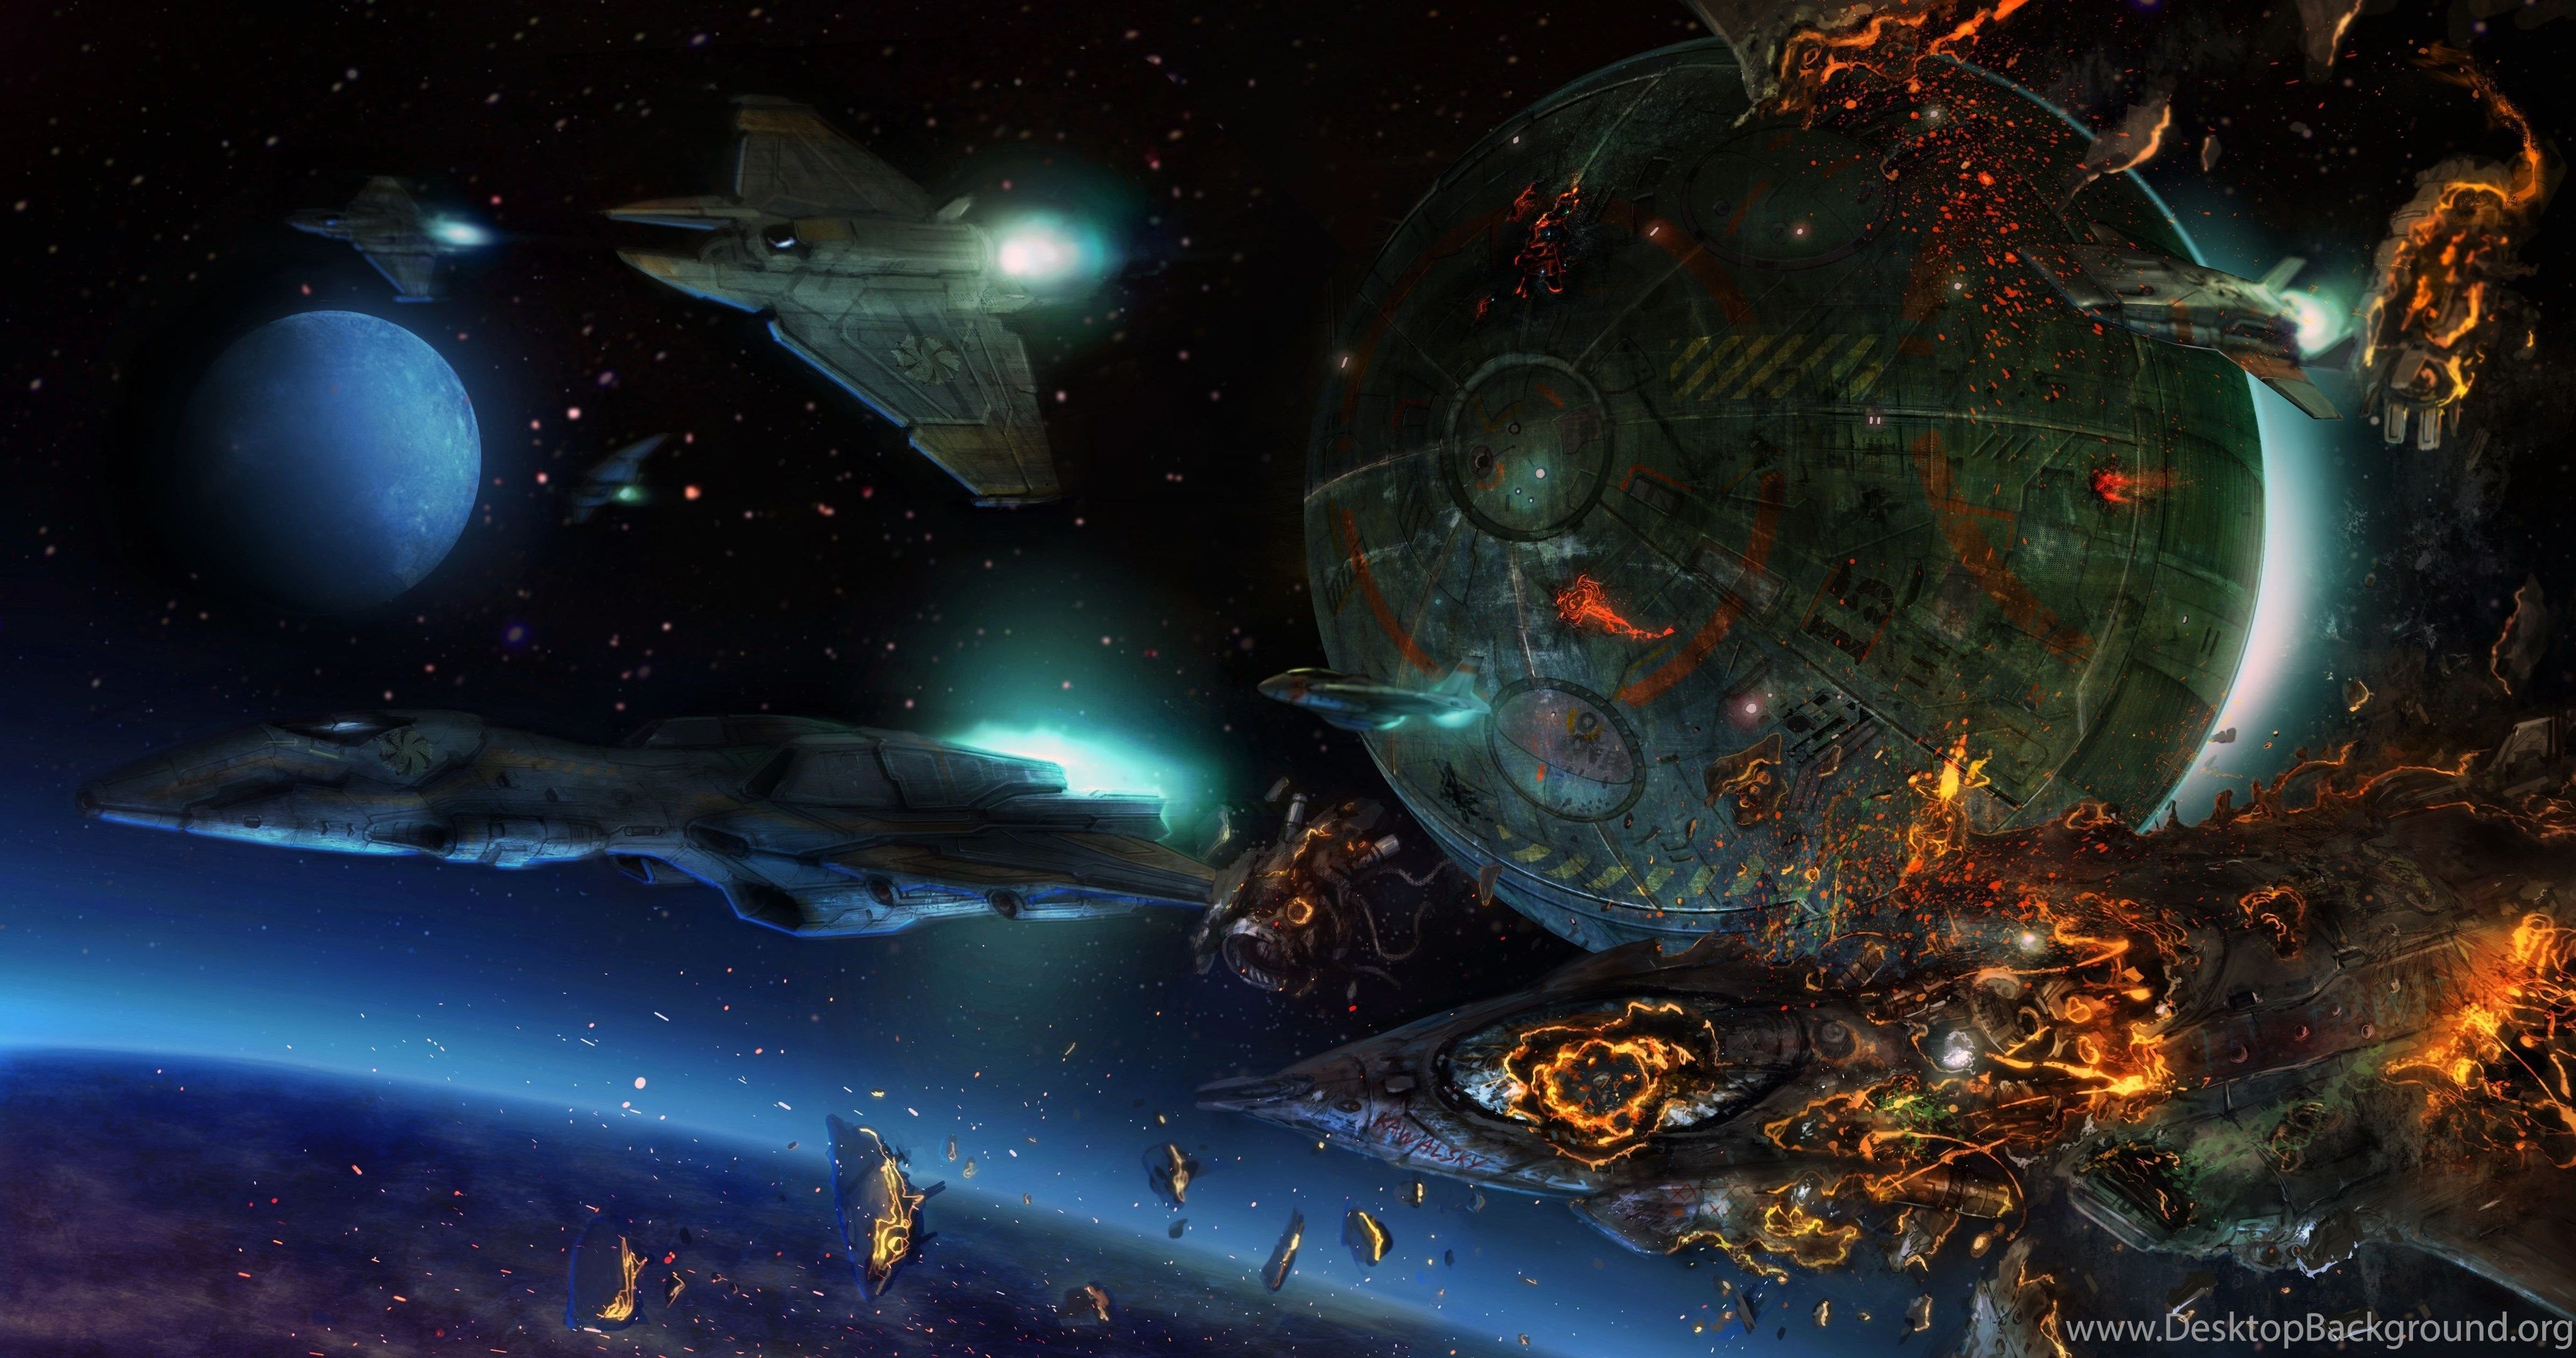 4096x2160 Sci Fi Artistic Wallpaper - Sci Fi Space Battle, HD Wallpaper on ...